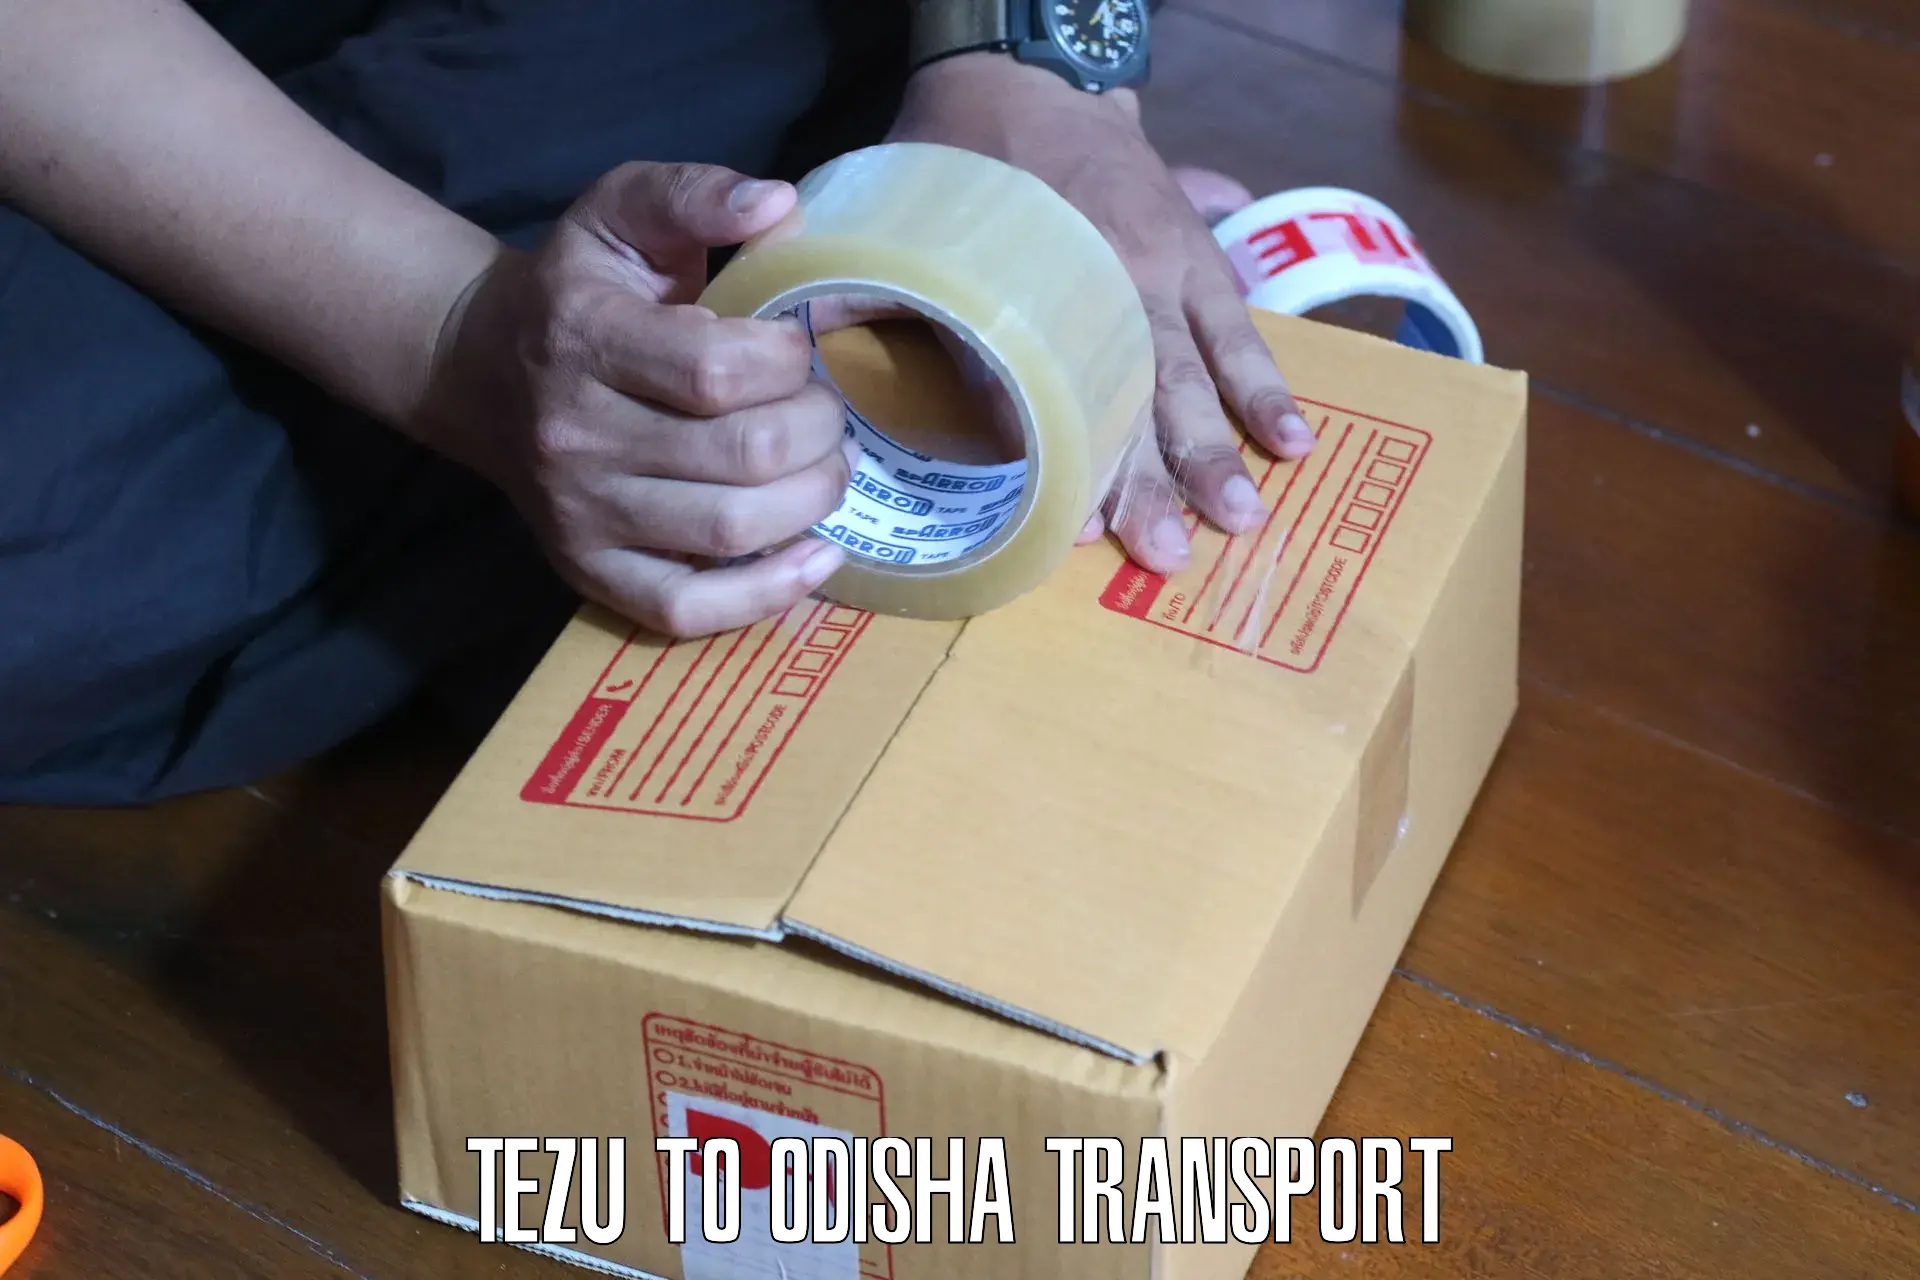 Furniture transport service Tezu to Bargarh